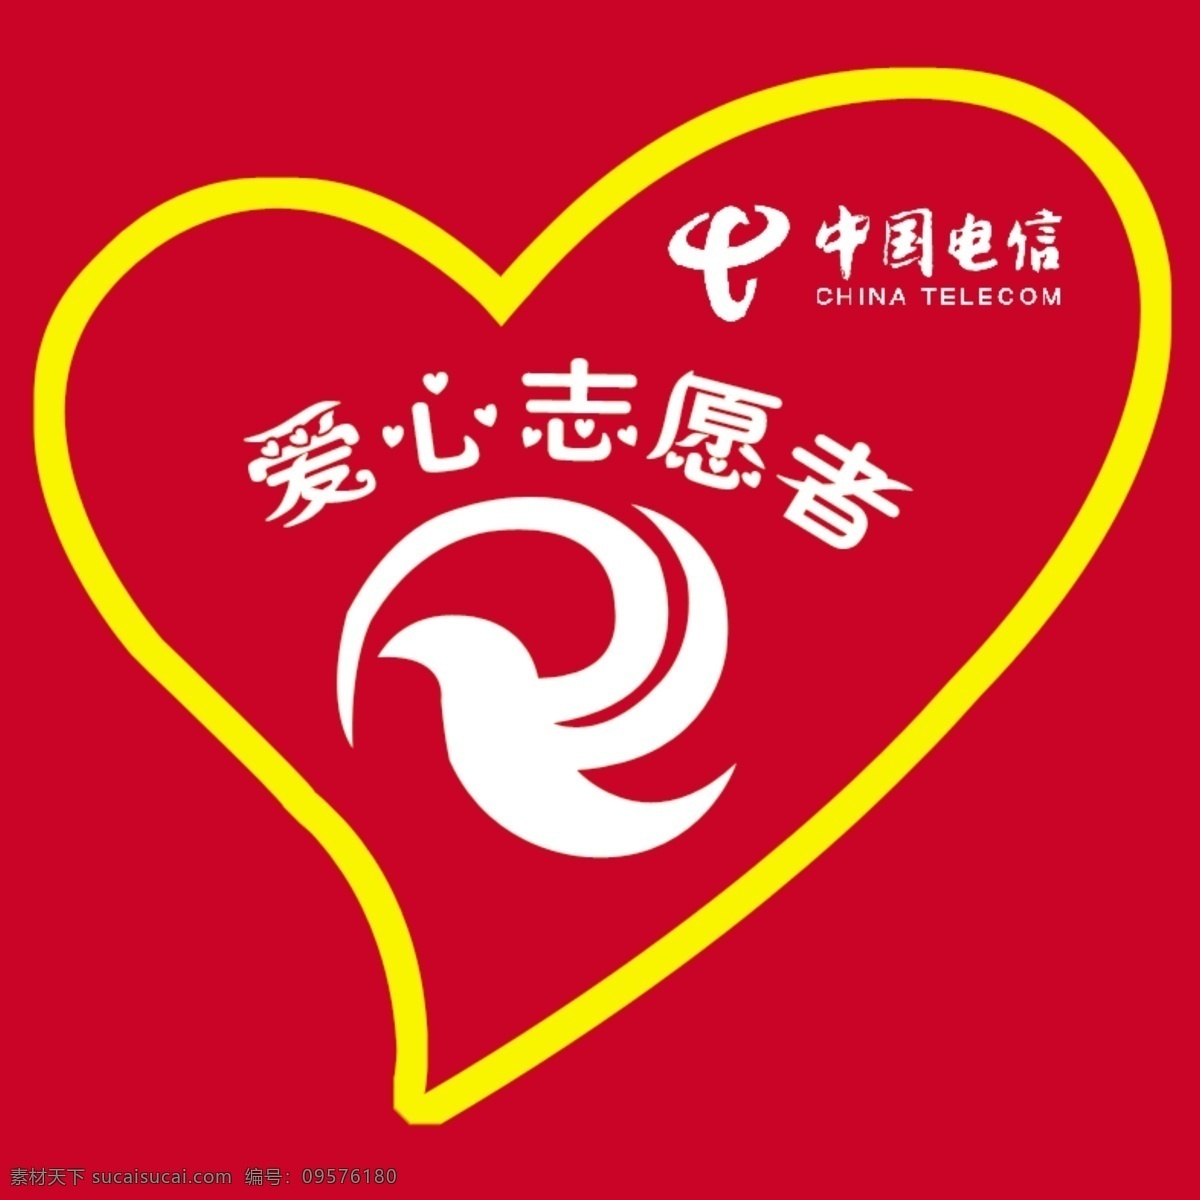 爱心志愿者 中国电信 爱心 志愿者 标志 分层 源文件